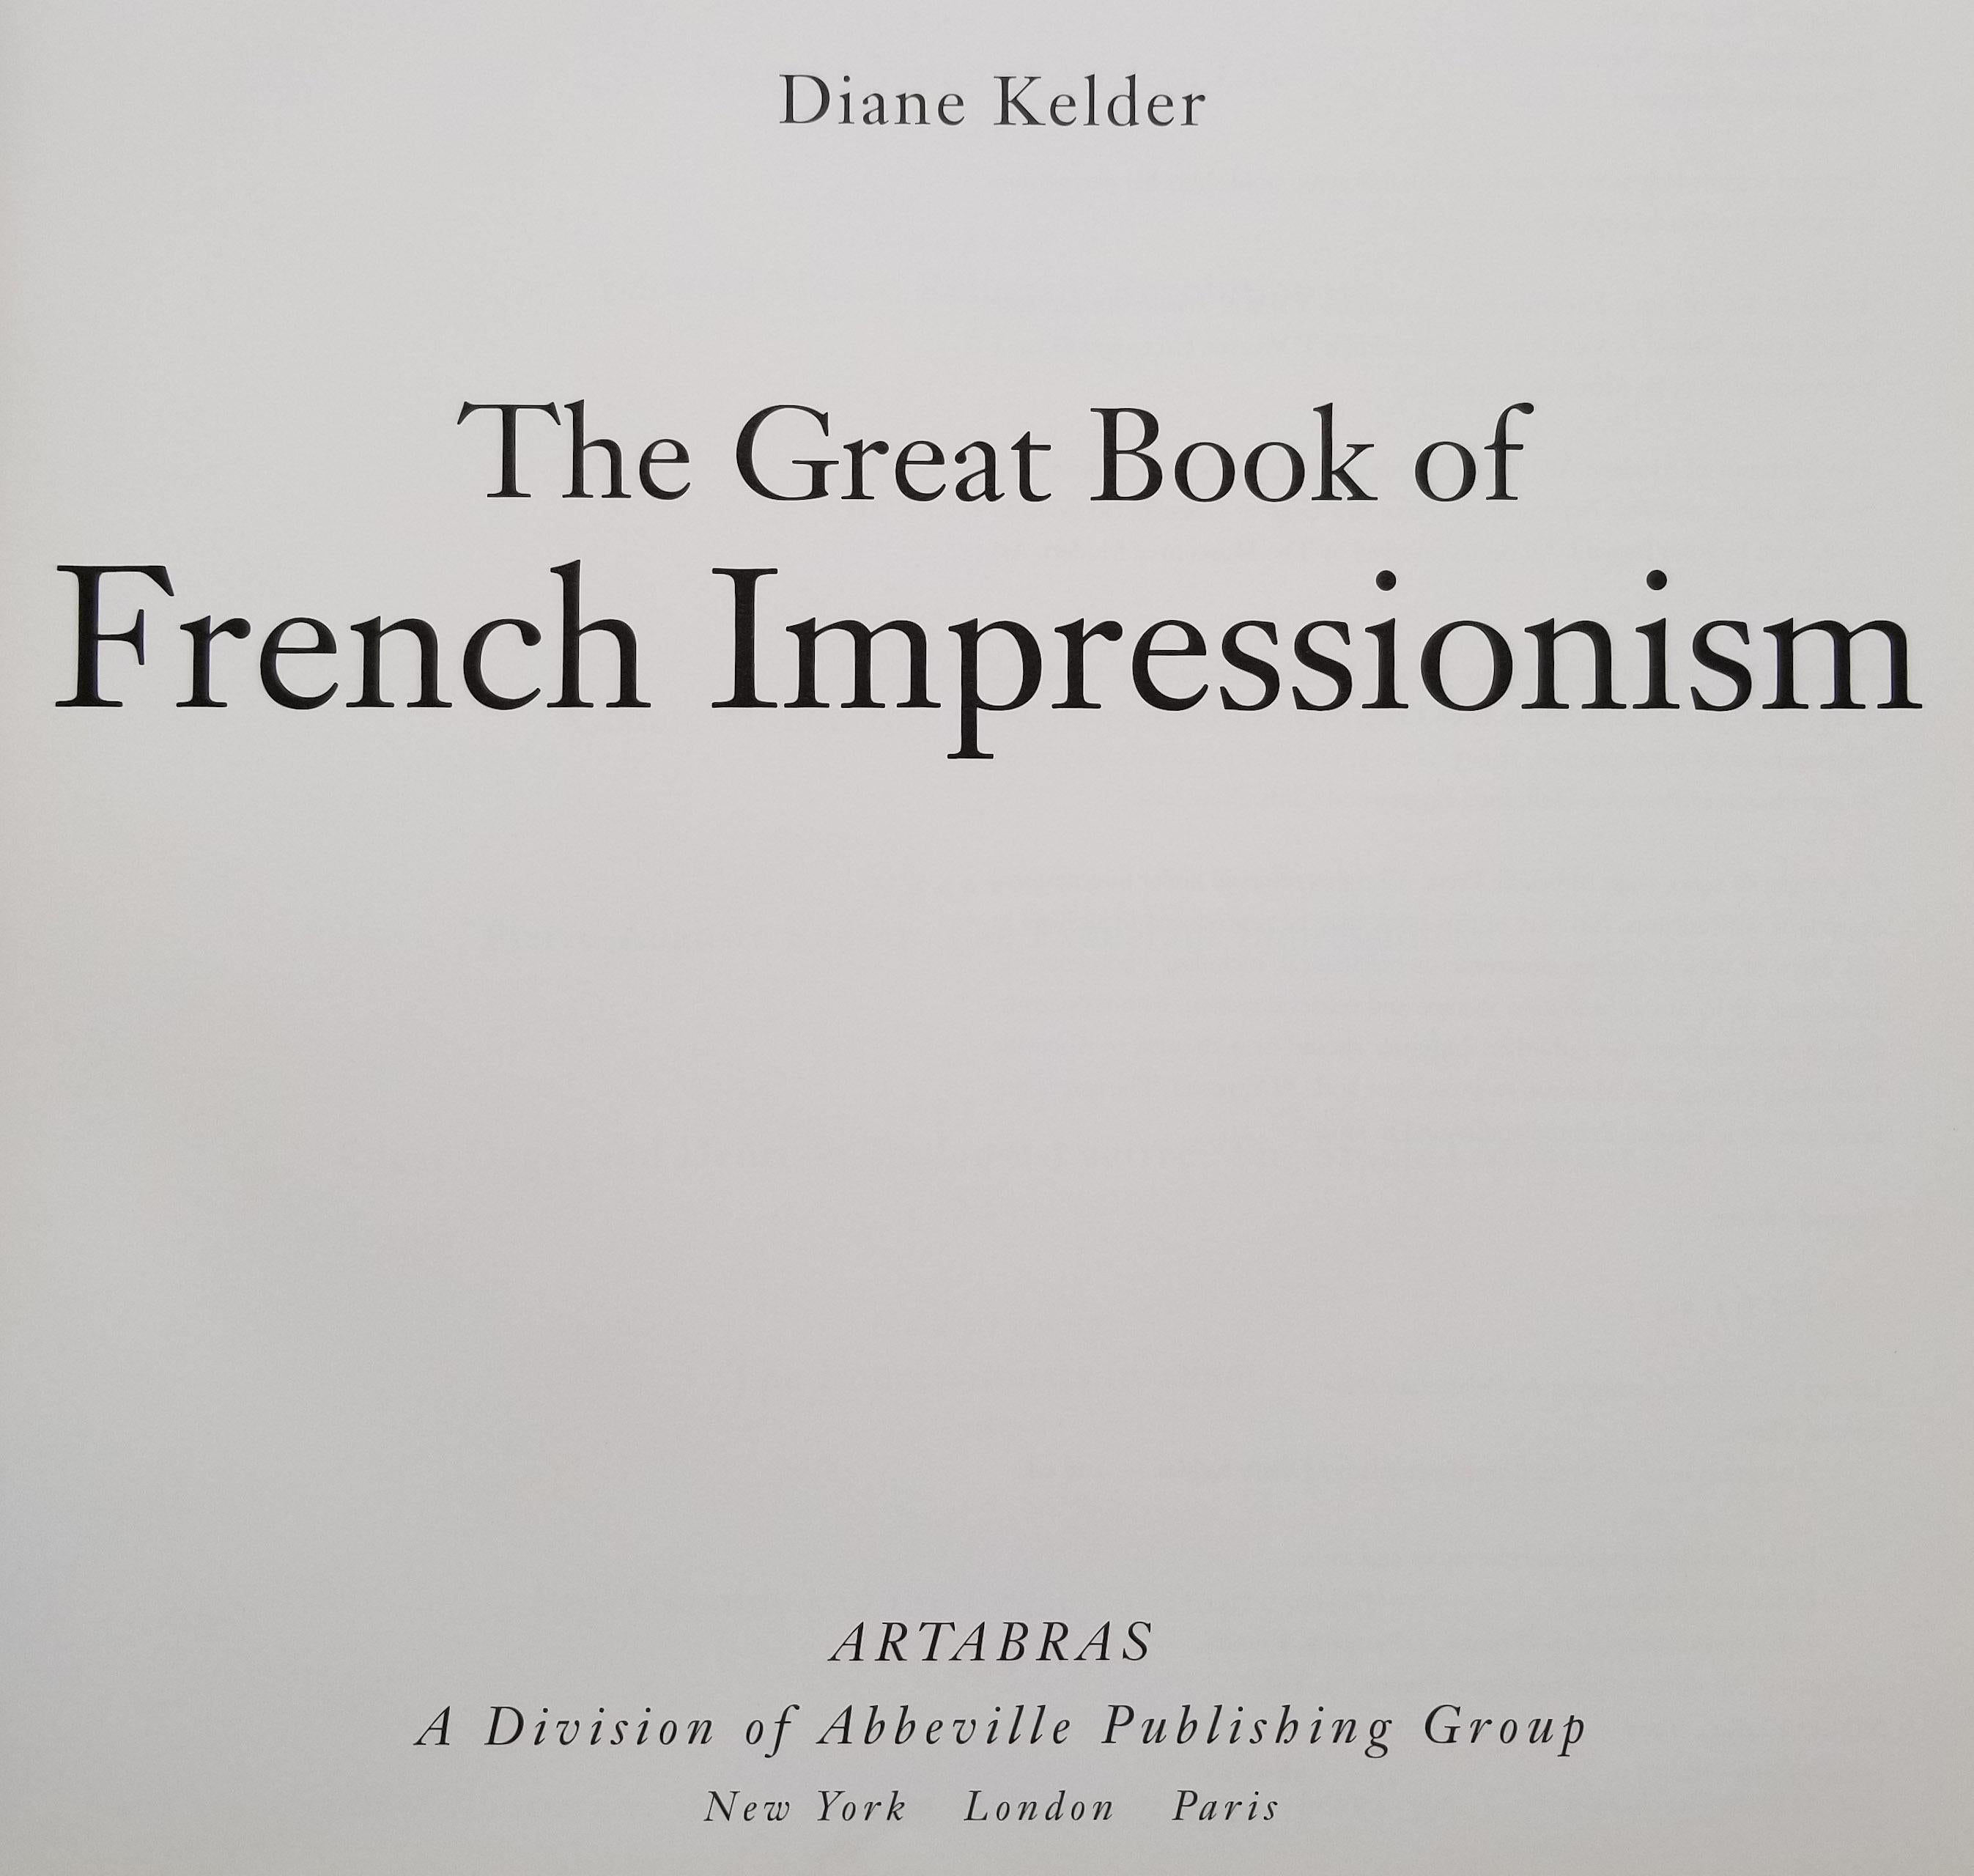 Fin du 20e siècle The Great Book of French Impressionism (Le grand livre de l'impressionnisme français) de Diane Kelder en vente